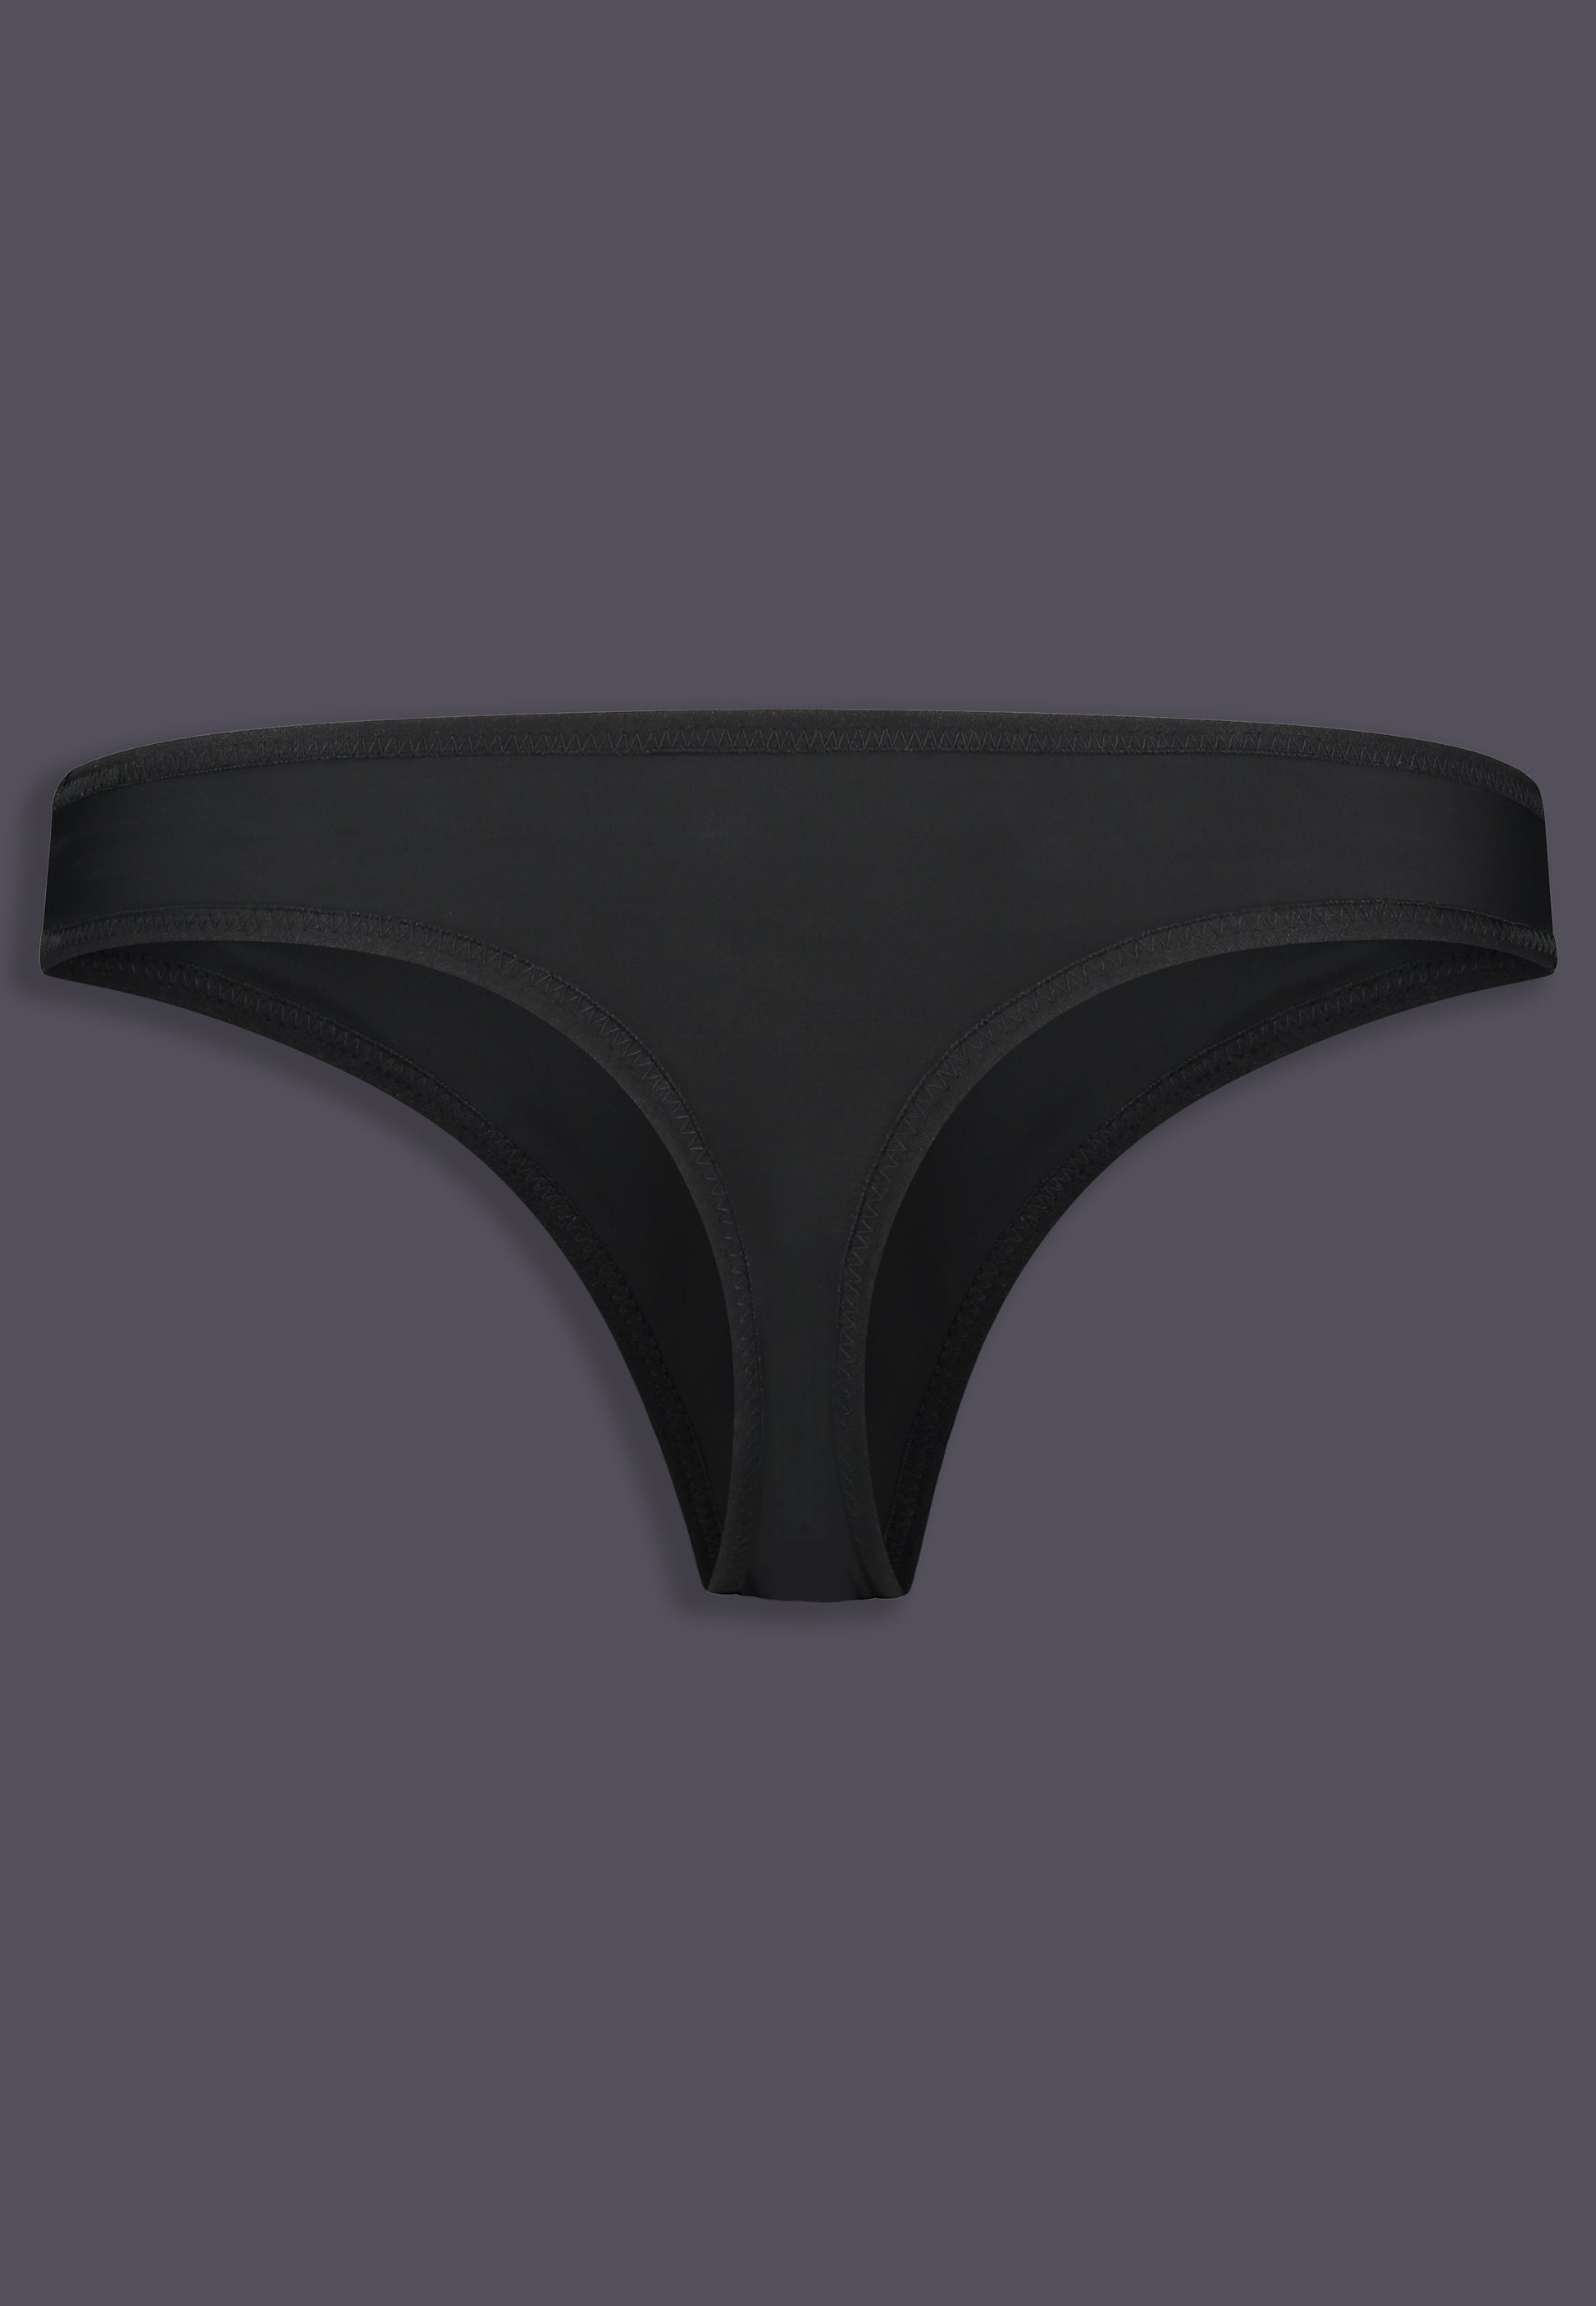 46B Bra Underwear Slips B Cup Size Mens Underwear Ball Pouch